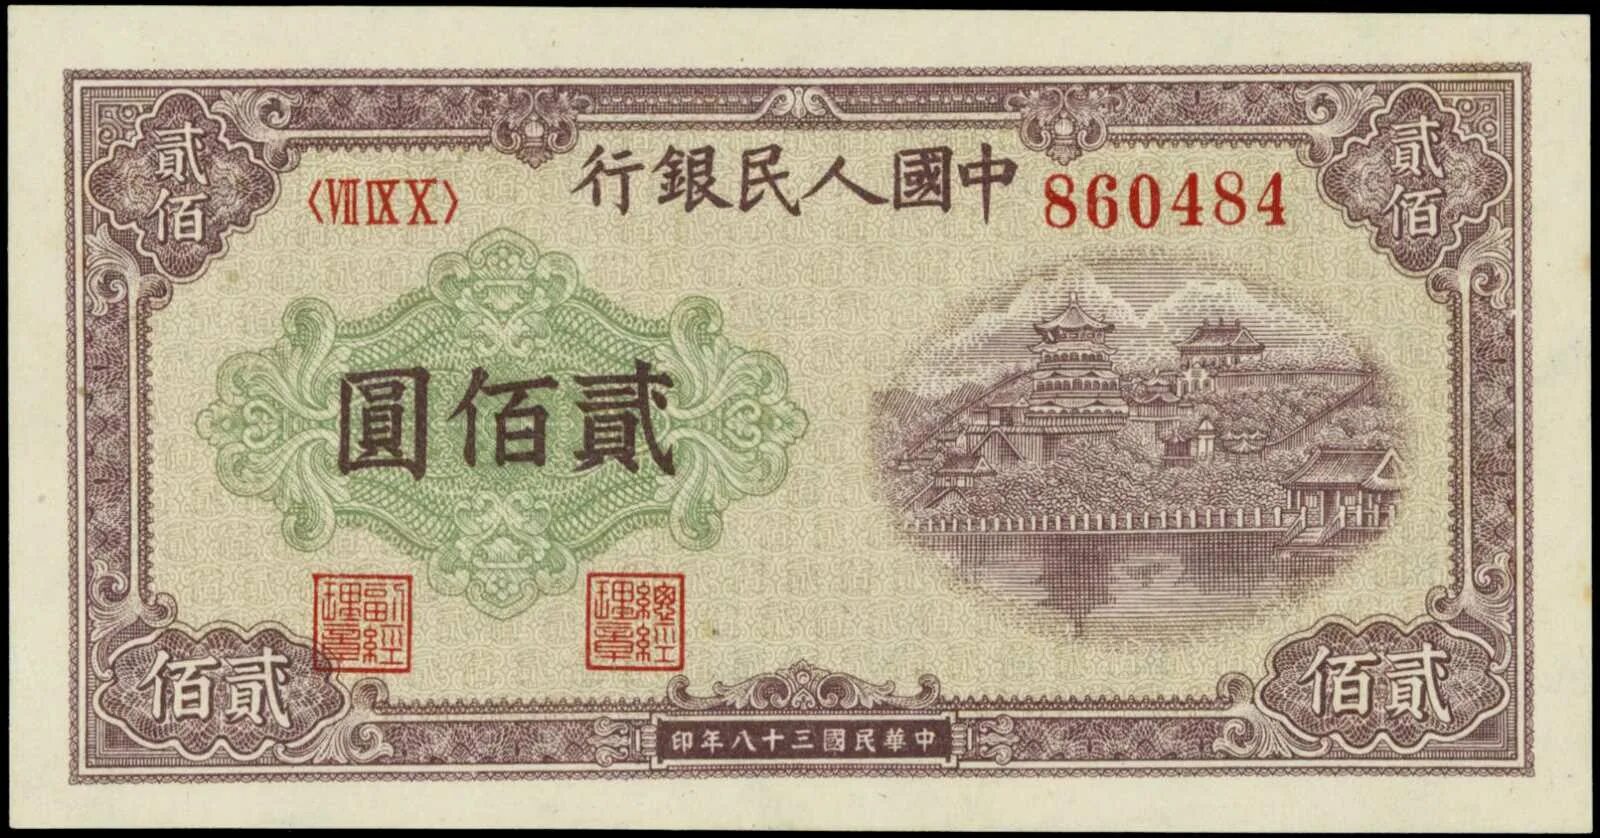 1949 Юаней. Бона Китай 1949. 200 Yuan 1949 p-837. 200 Юаней 1949.